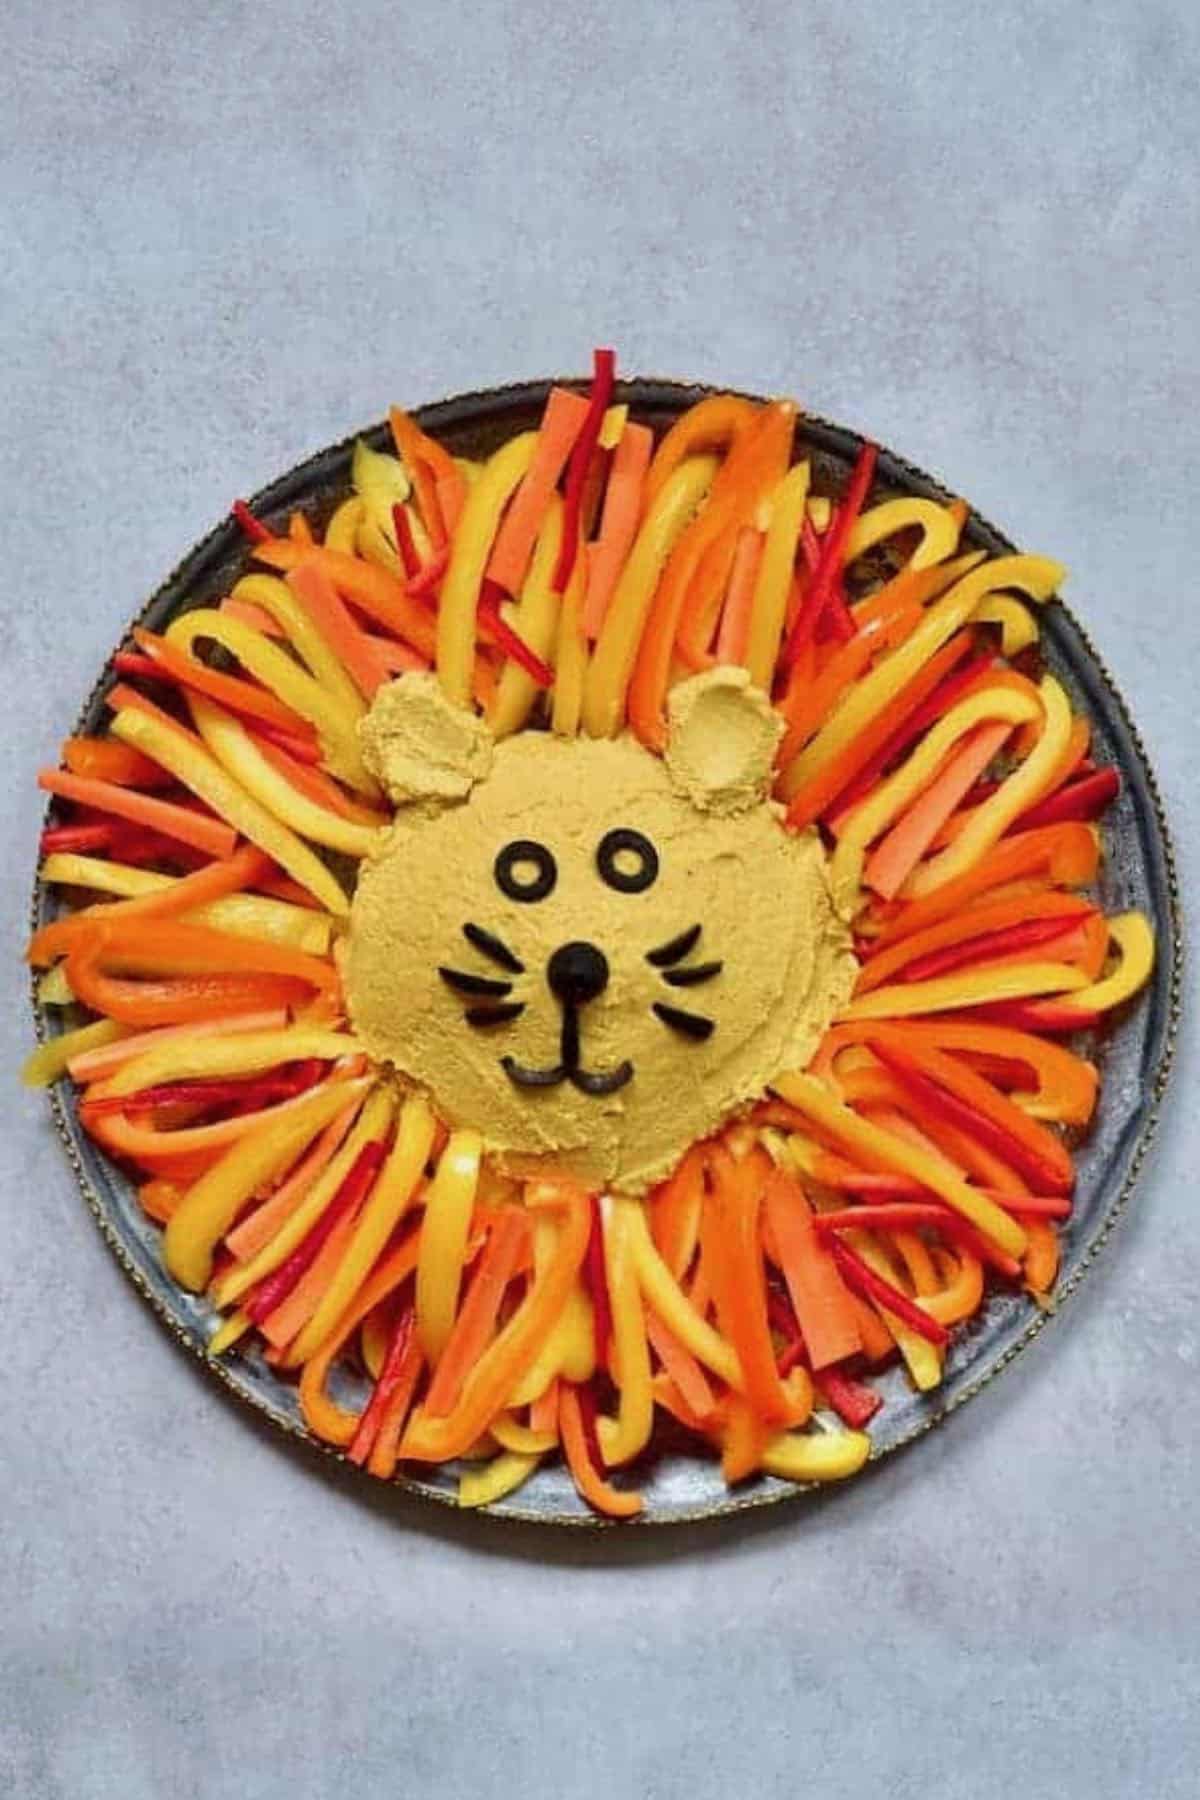 Pumpkin spiced hummus shaped as lion